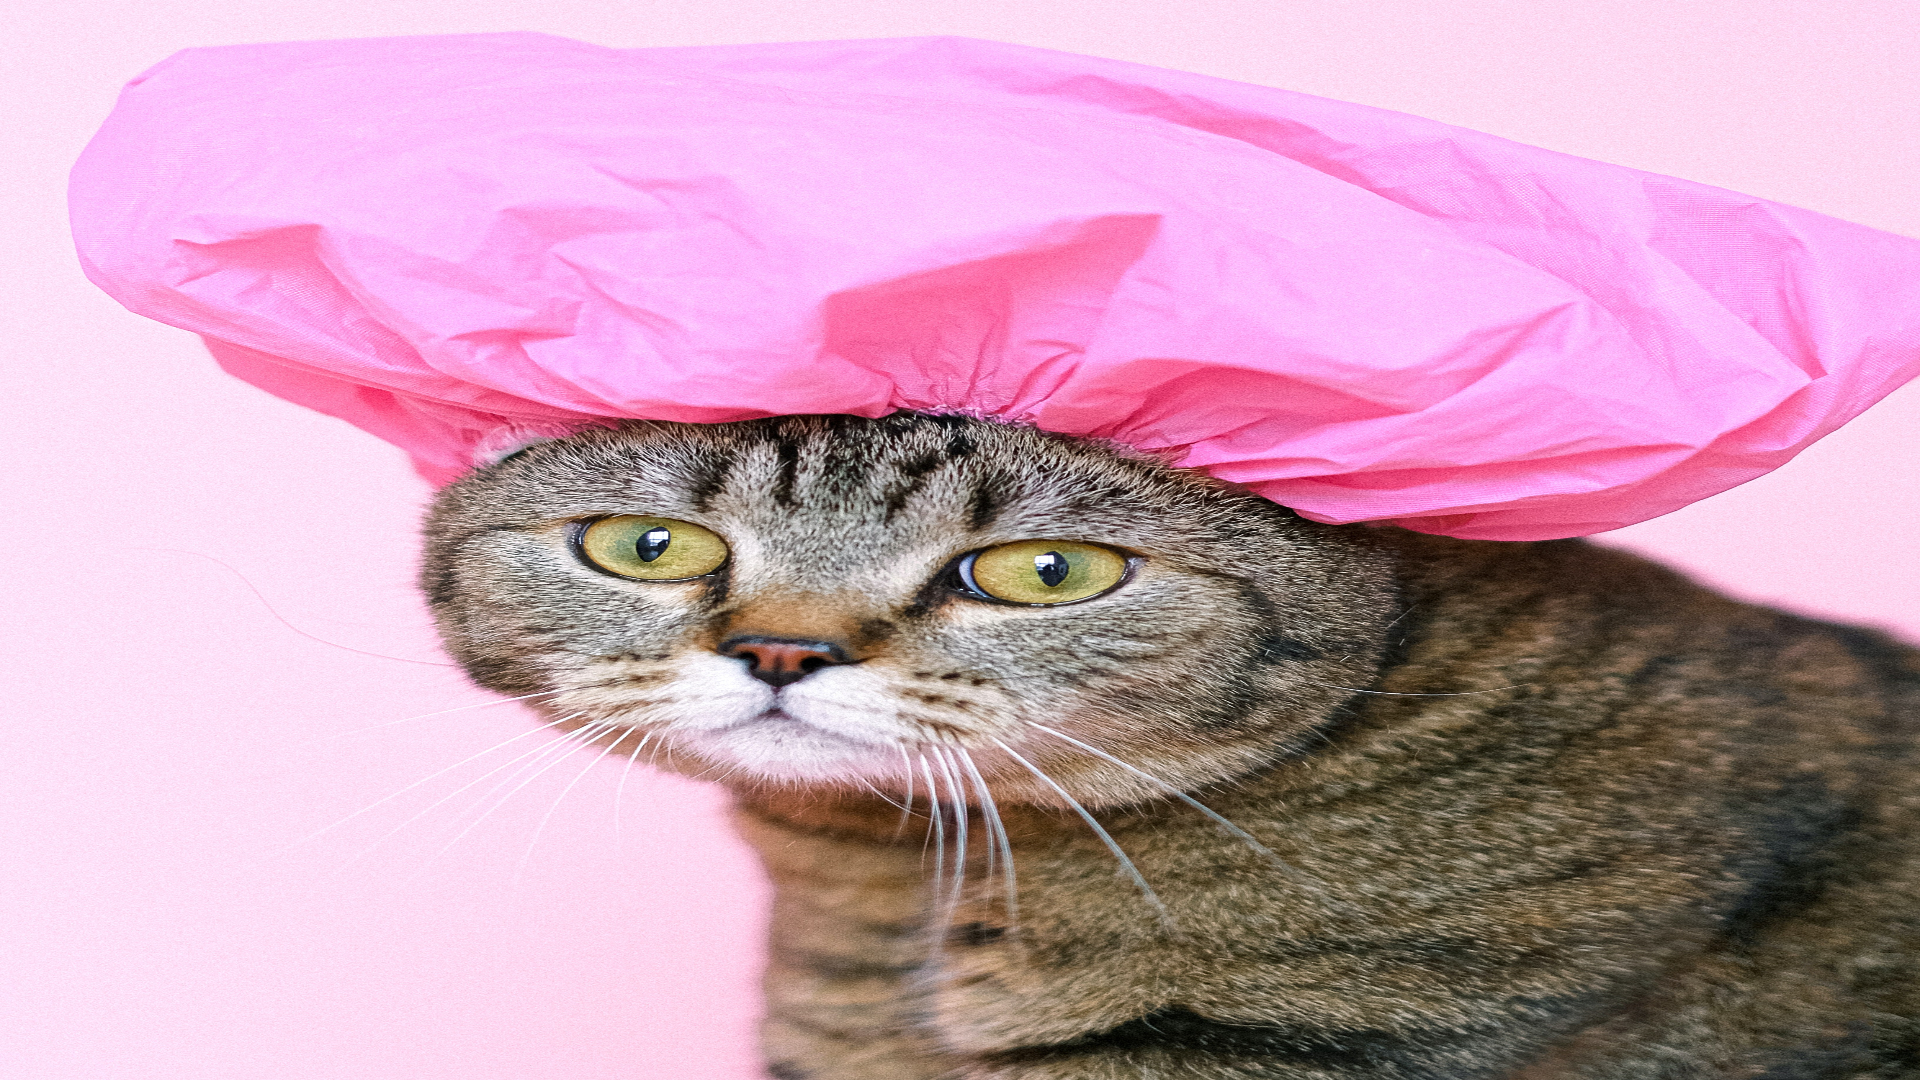 Foto de capa do artigo "Banho em gato: frequência recomendada e dicas"